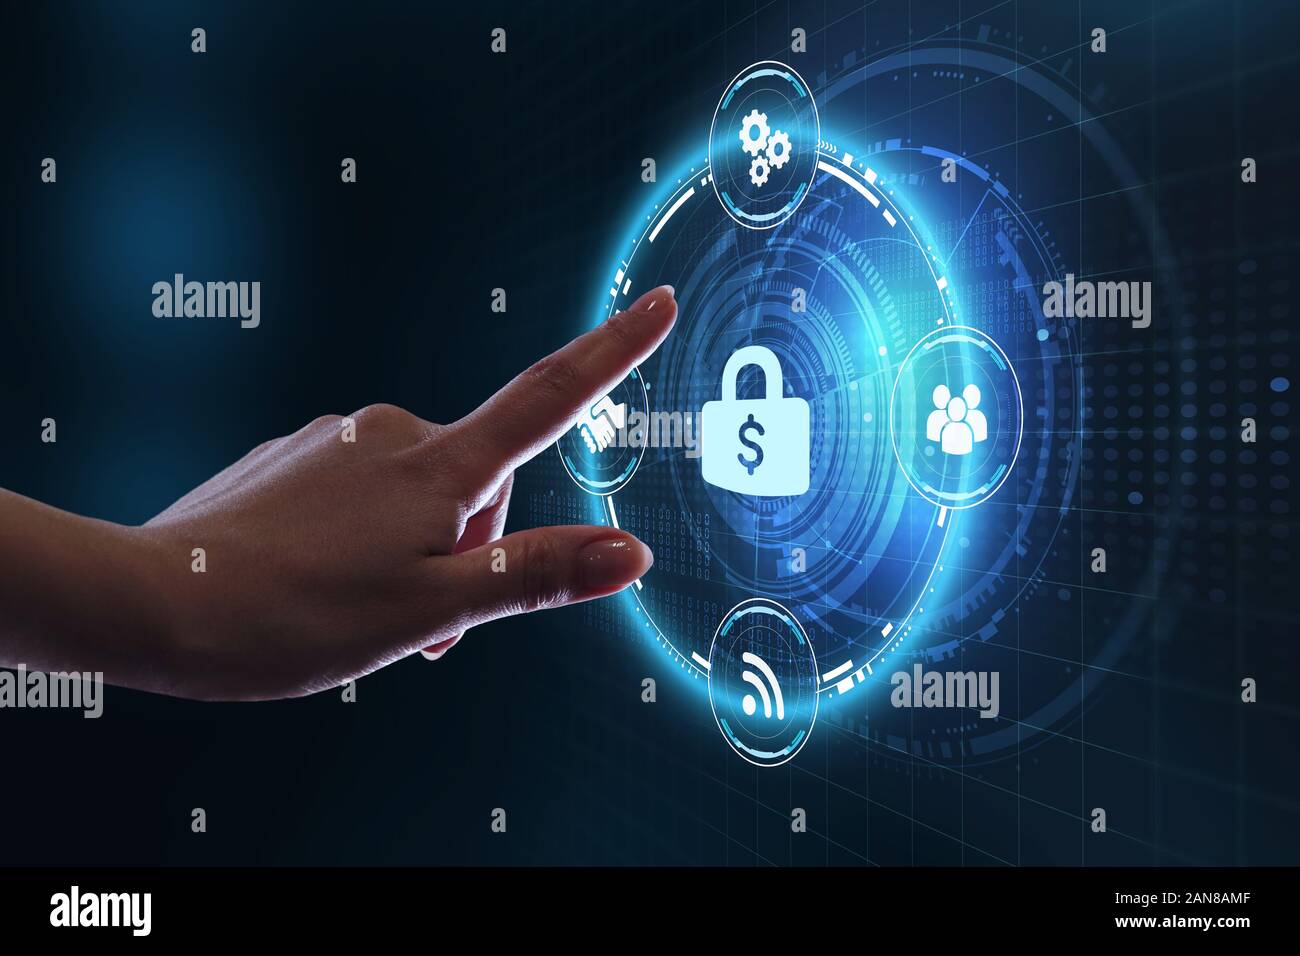 Cyber Security Datenschutz Business Technology Datenschutz Konzept. Junge Unternehmer das Symbol wählen, um die Sicherheit auf dem virtuellen Display. Stockfoto